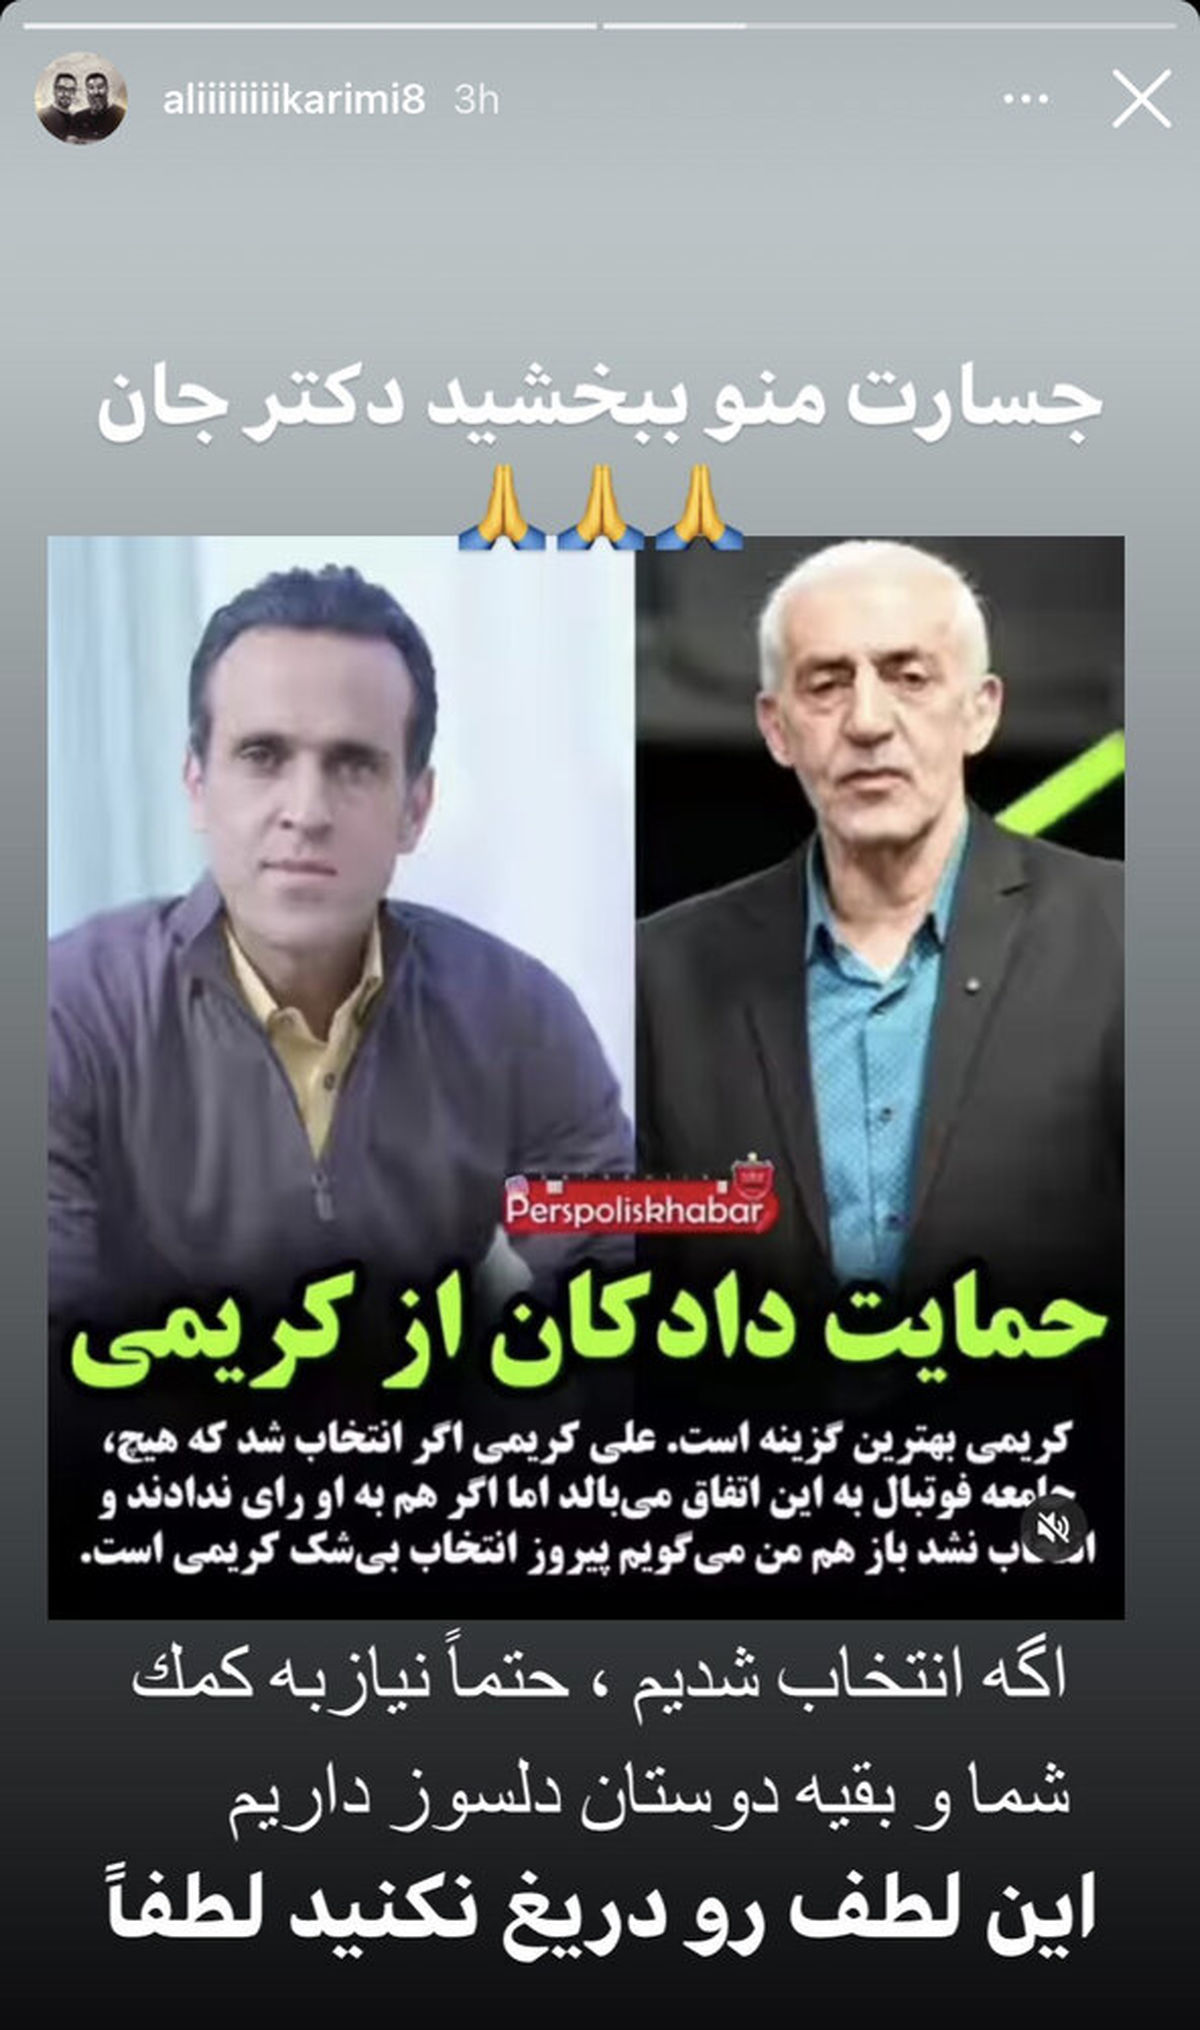 علی کریمی در انتخابات از محمد دادکان کمک خواست (عکس)